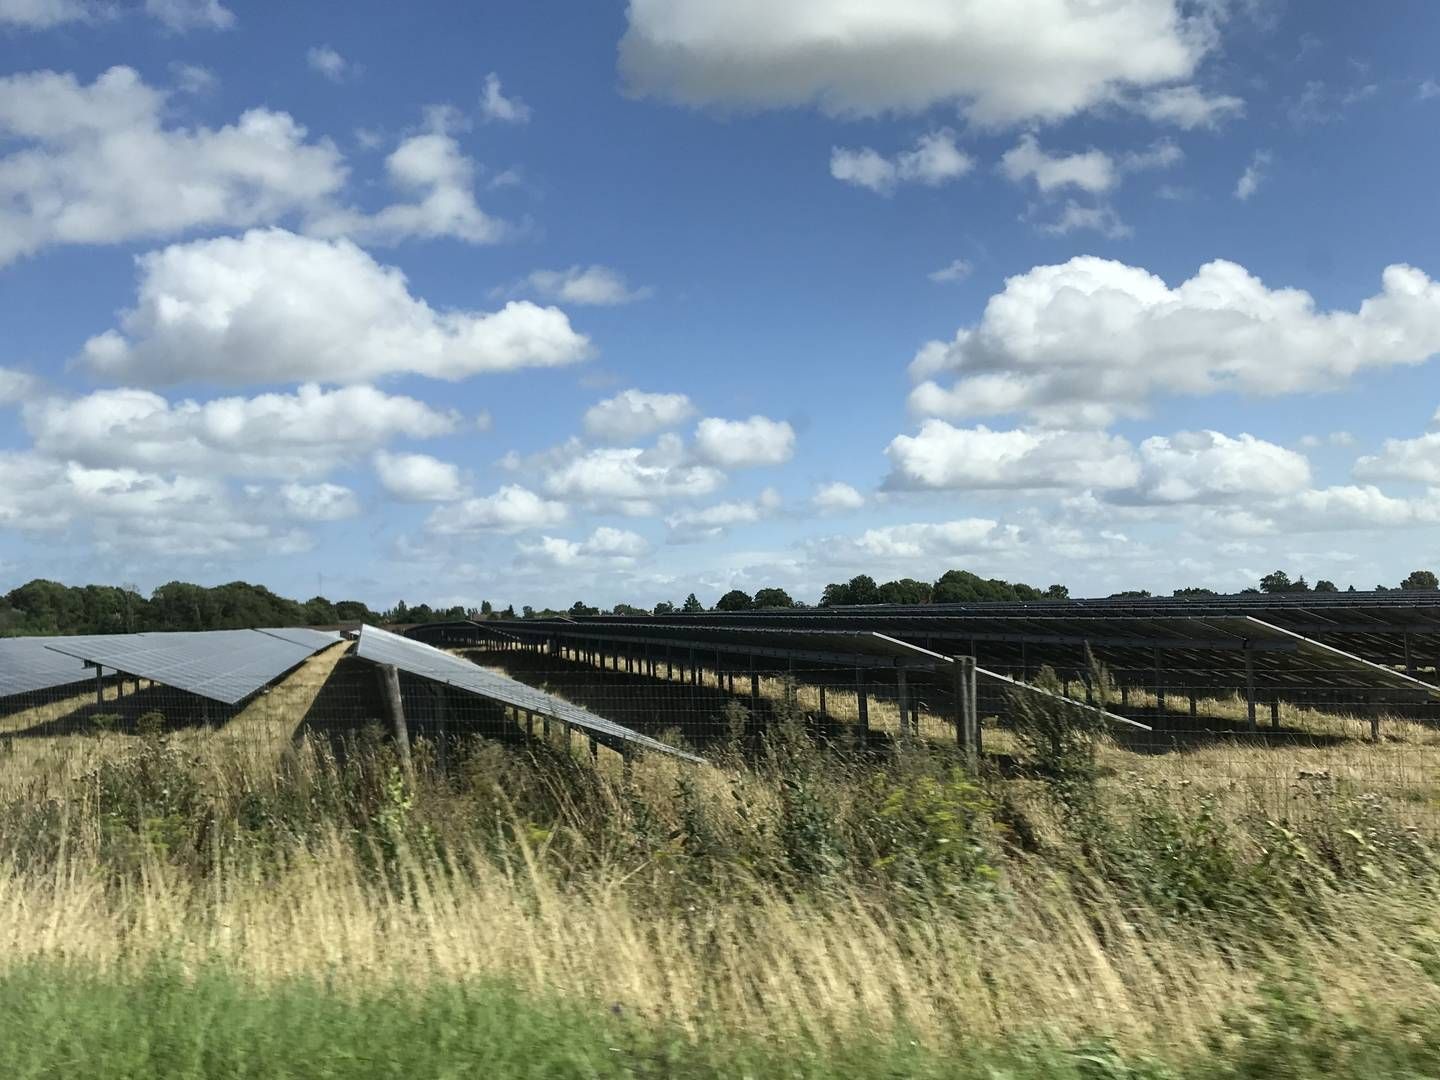 Hofor vil gerne bygge mere vedvarende energi på Lolland. Med en ny markedsmodel for lokal nedregulering bliver det nu muligt. Her ses forsyningsselskabets solcellepark på 180 MW ved Sorø på Vestsjælland. | Foto: PR Hofor